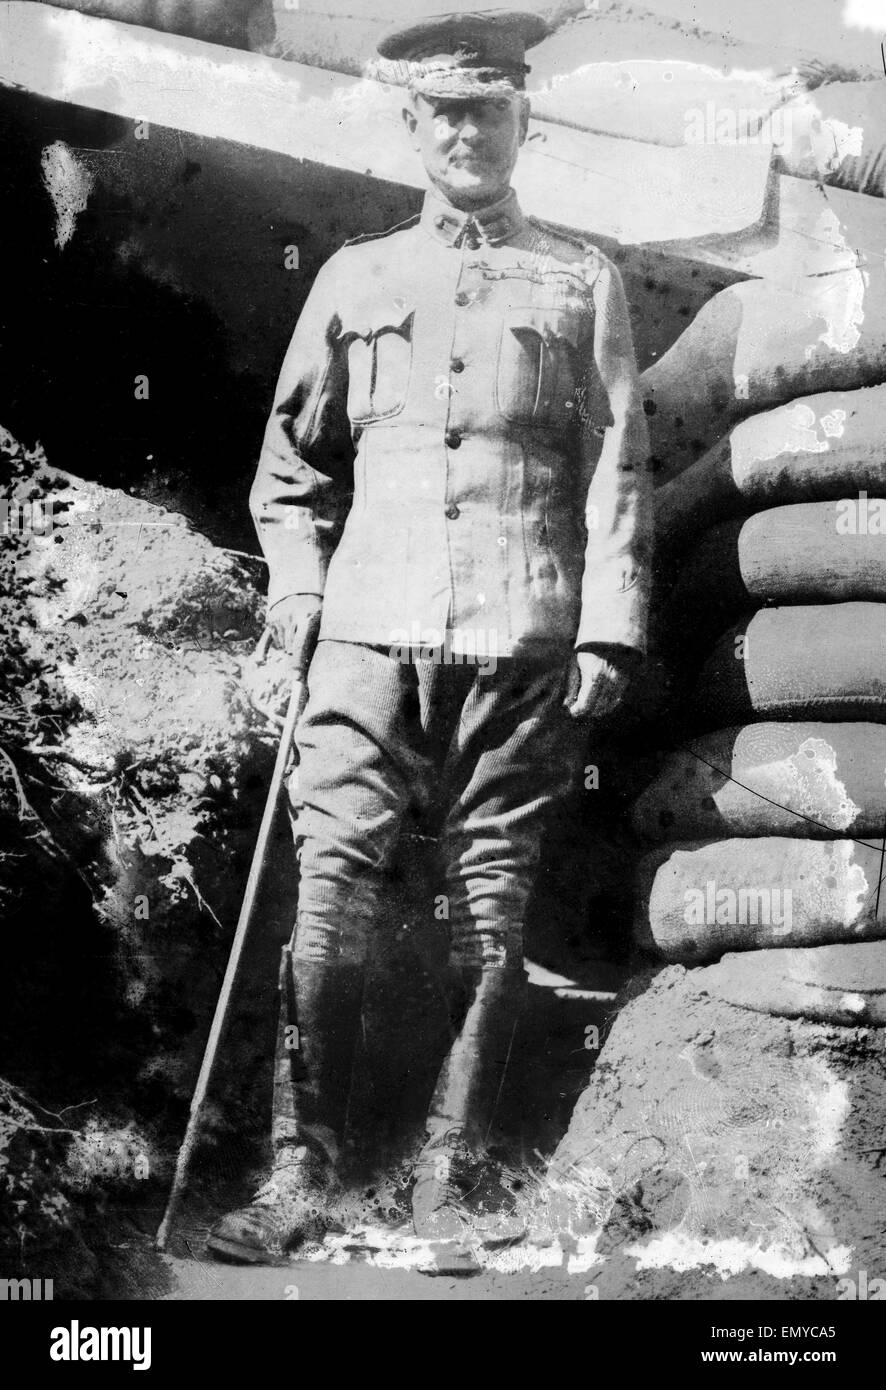 Le Maréchal William Birdwood Riddell, 1er baron Birdwood (1865 -1951), un général britannique qui a servi comme commandant de l'Australian and New Zealand Army Corps (ANZAC) pendant la campagne de Gallipoli en 1915, pendant la Première Guerre mondiale. Banque D'Images